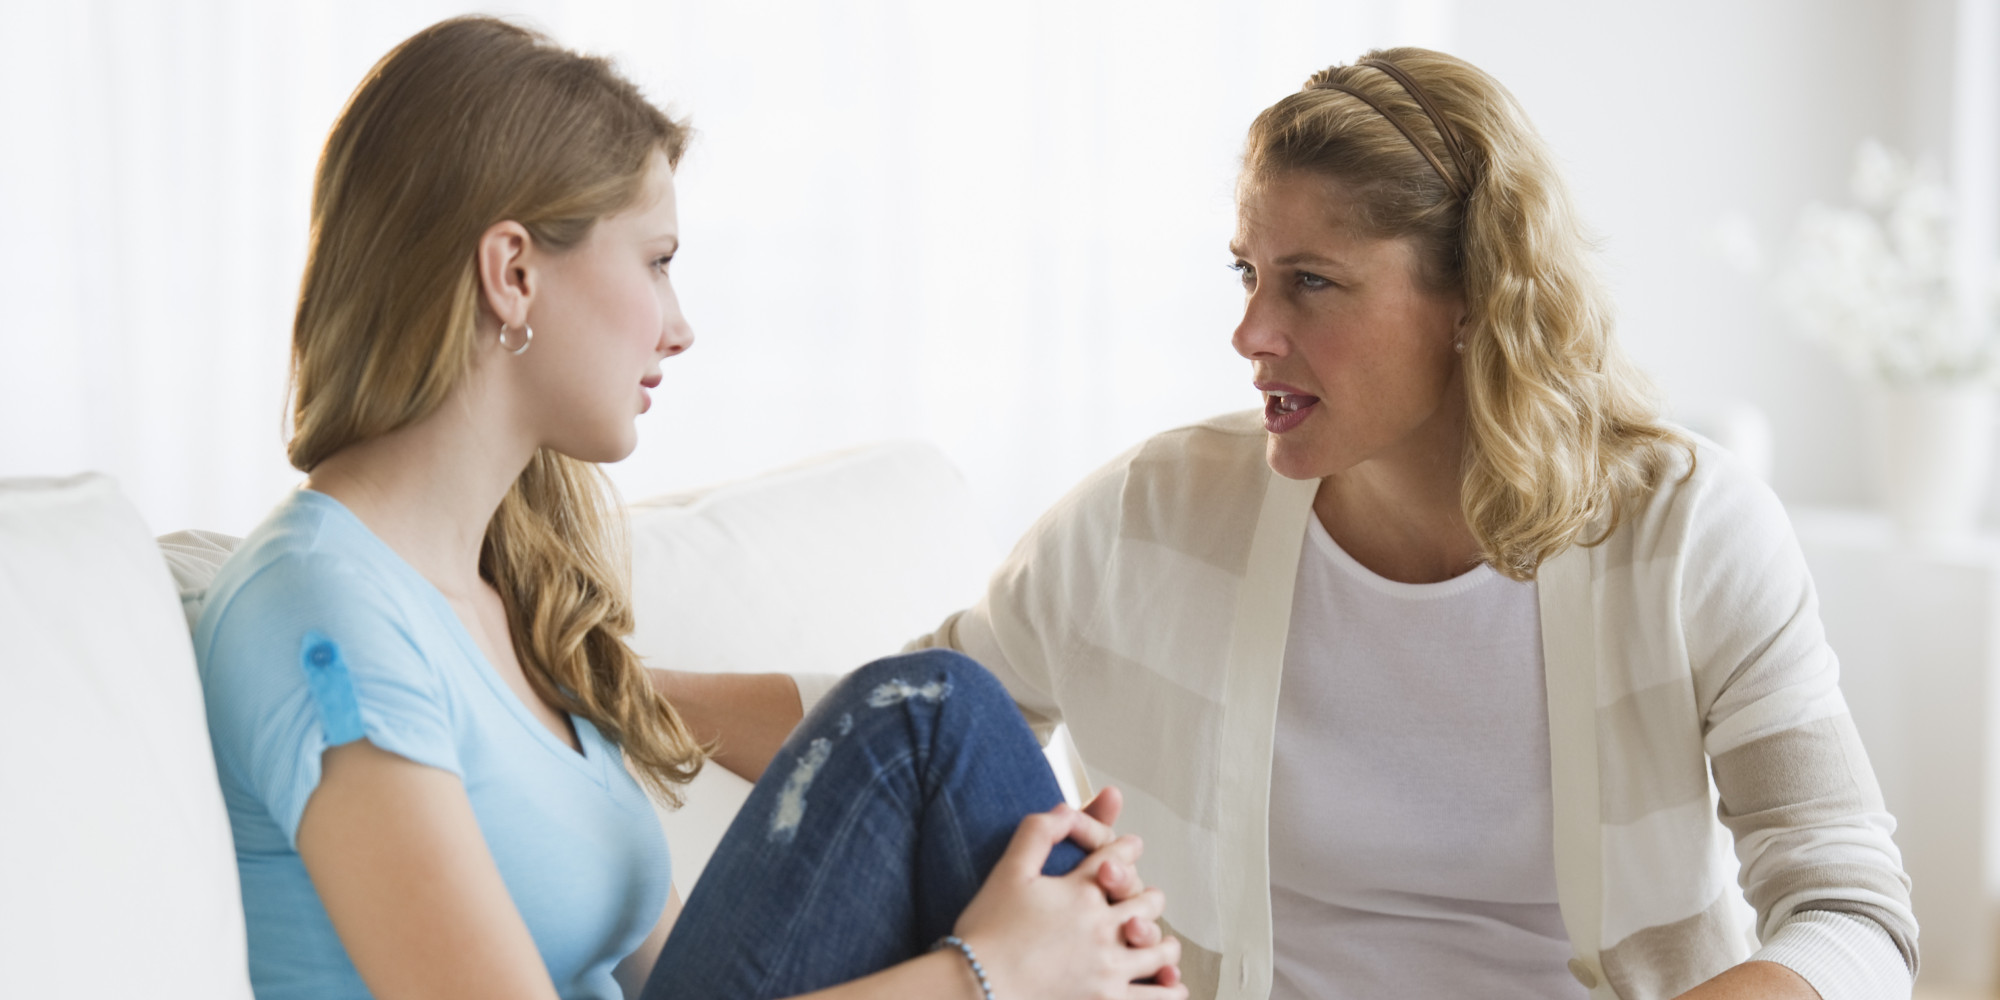 რჩევები მოზარდების მშობლებს - როგორ უნდა მოექცეთ შვილს ცხოვრების ყველაზე რთულ პერიოდში